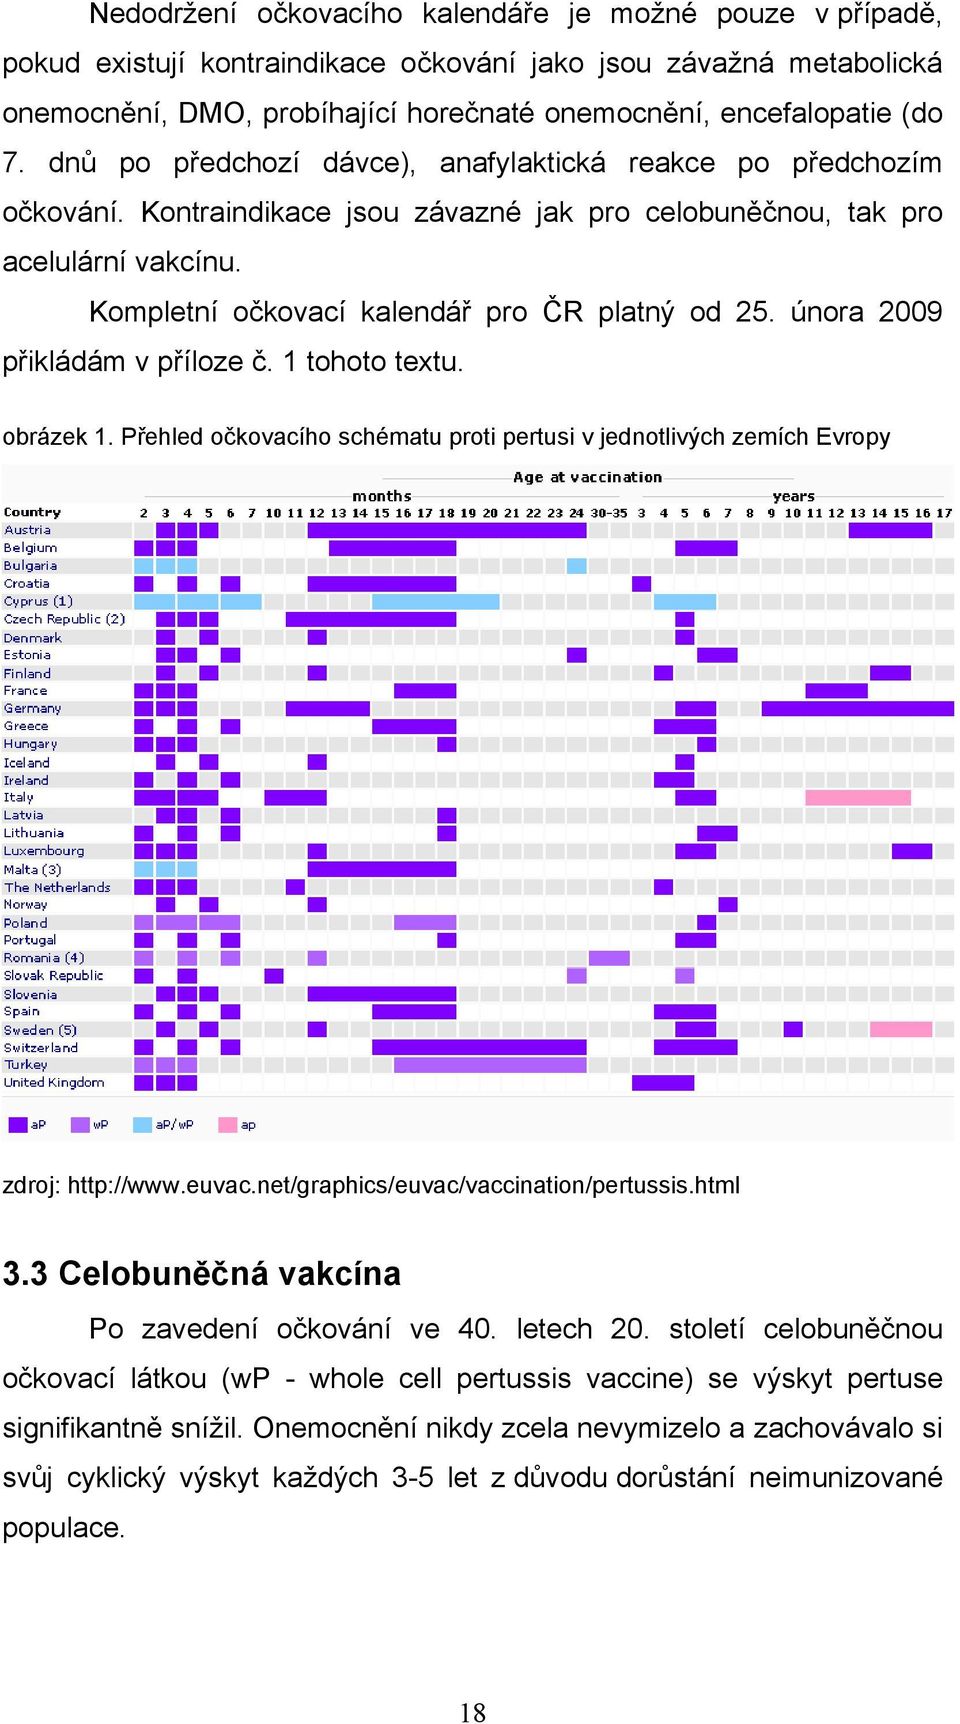 února 2009 přikládám v příloze č. 1 tohoto textu. obrázek 1. Přehled očkovacího schématu proti pertusi v jednotlivých zemích Evropy zdroj: http://www.euvac.net/graphics/euvac/vaccination/pertussis.